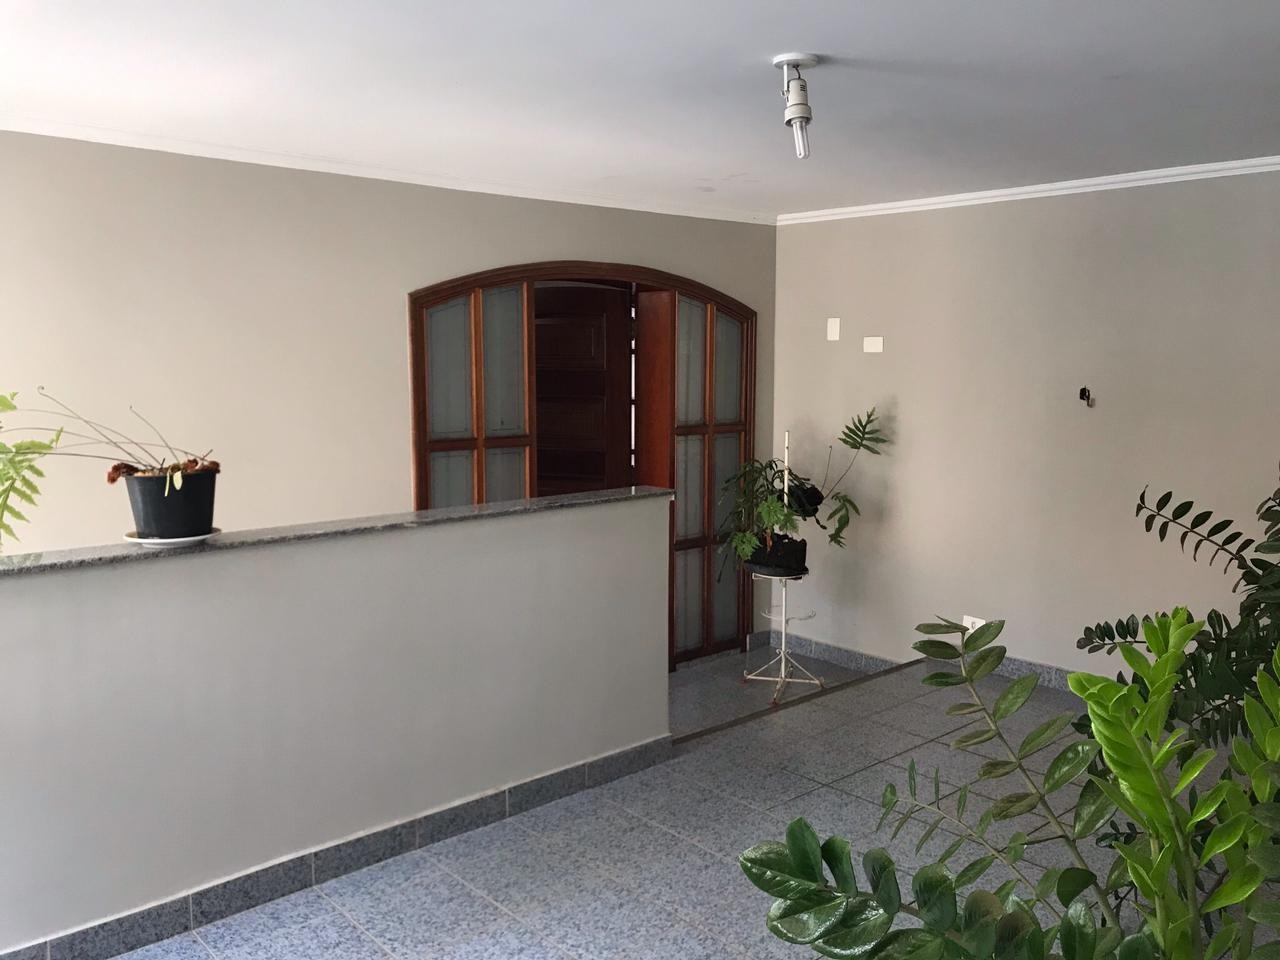 Casa para comprar, 3 quartos, 1 suíte, no bairro Cidade Alta em Piracicaba - SP